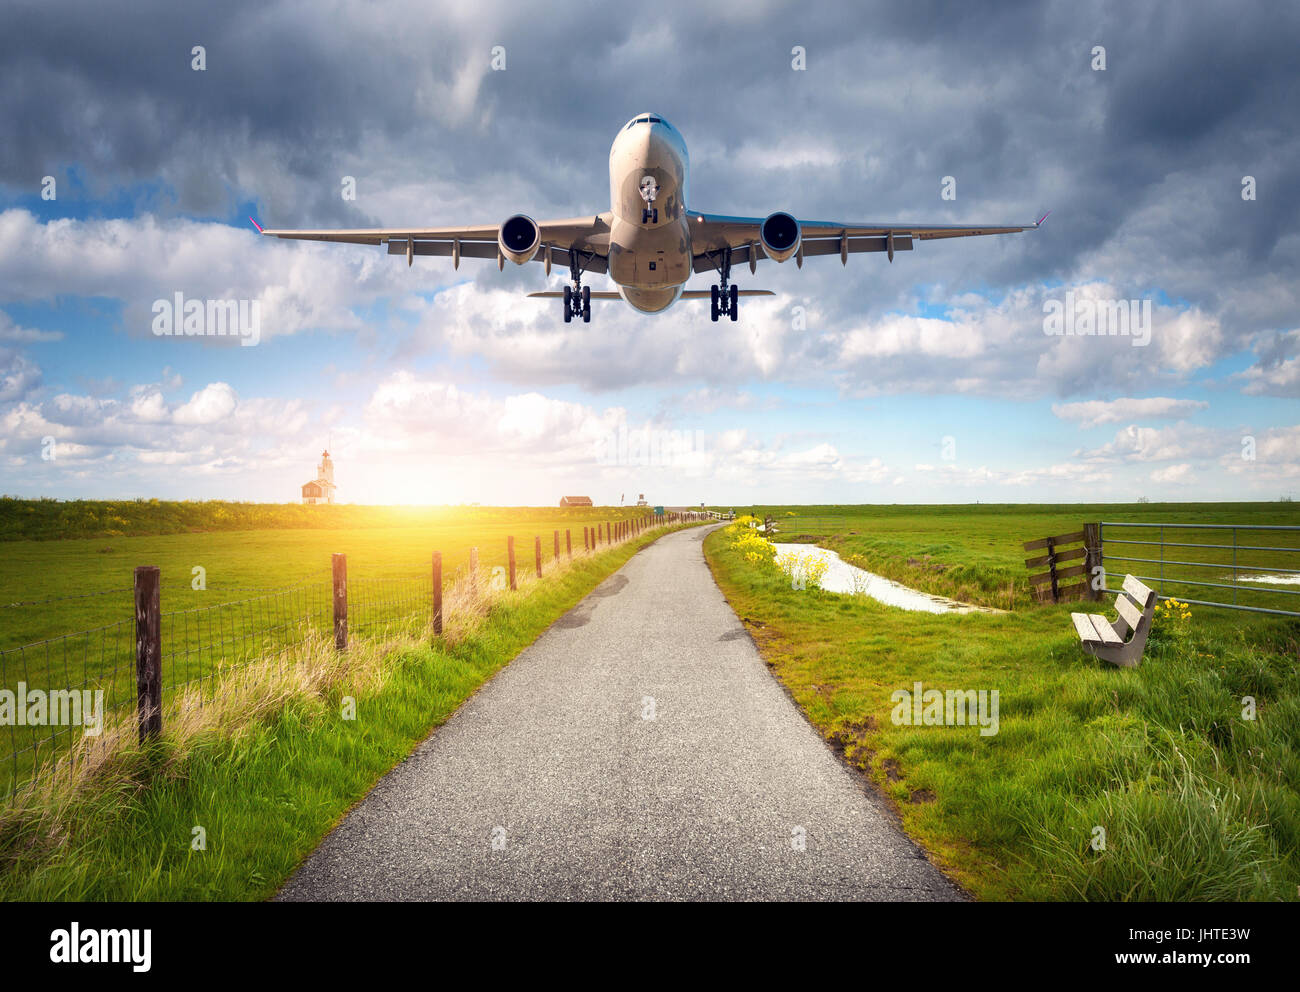 Flugzeug und Landstraße. Landschaft mit Passagierflugzeug fliegt über die Asphaltstraße gegen bewölktem Himmel, grüne Wiese. Reise. Passagier ein Stockfoto